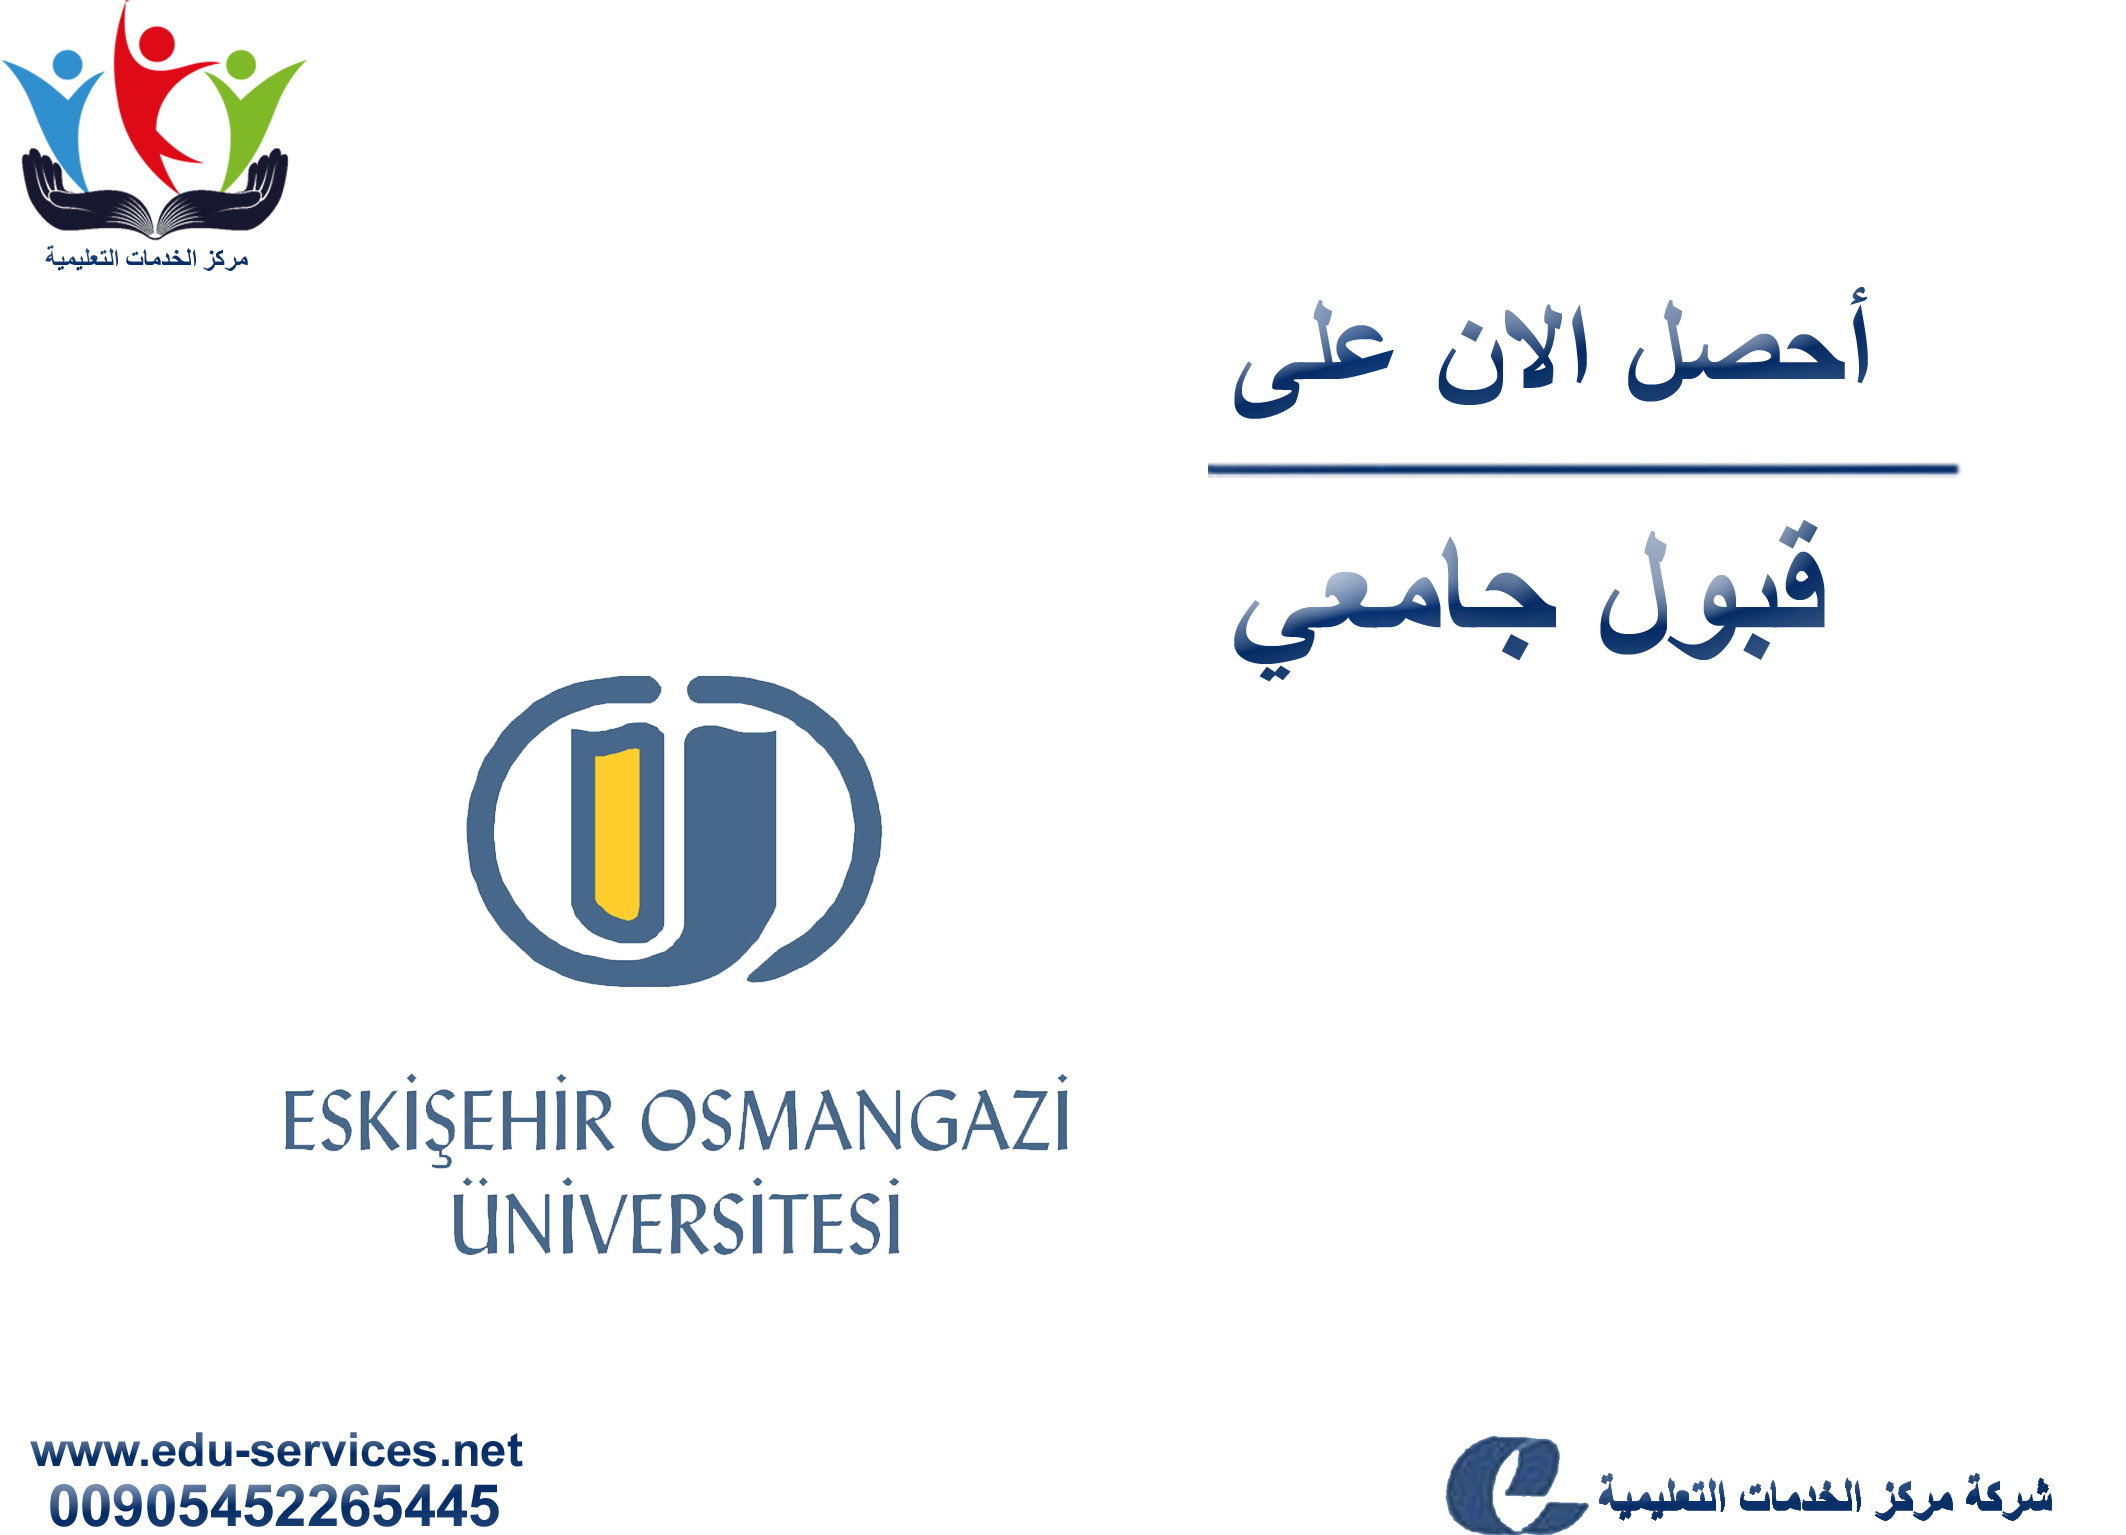 افتتاح التسجيل على جامعة اسكي شهير عثمان غازي لبرنامج الدراسات العليا للعام 2019-2020